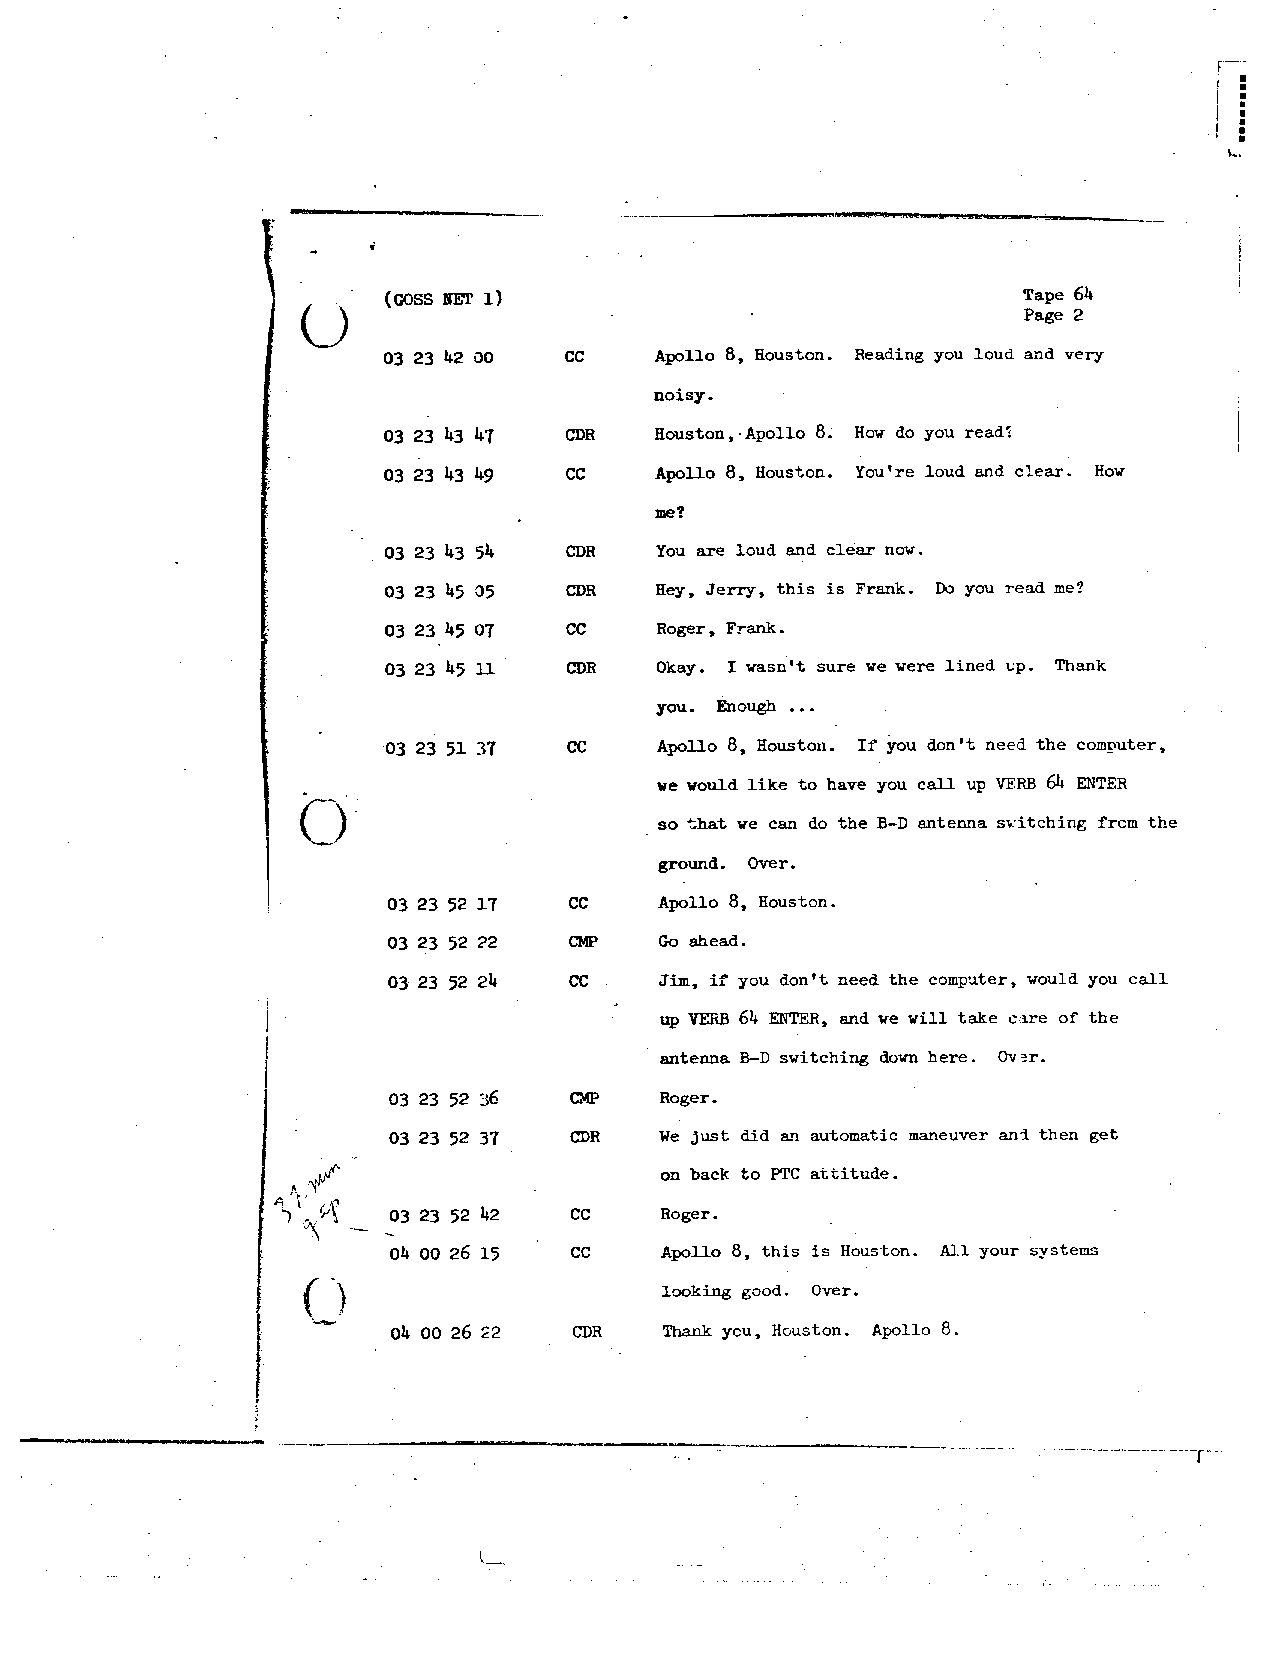 Page 506 of Apollo 8’s original transcript